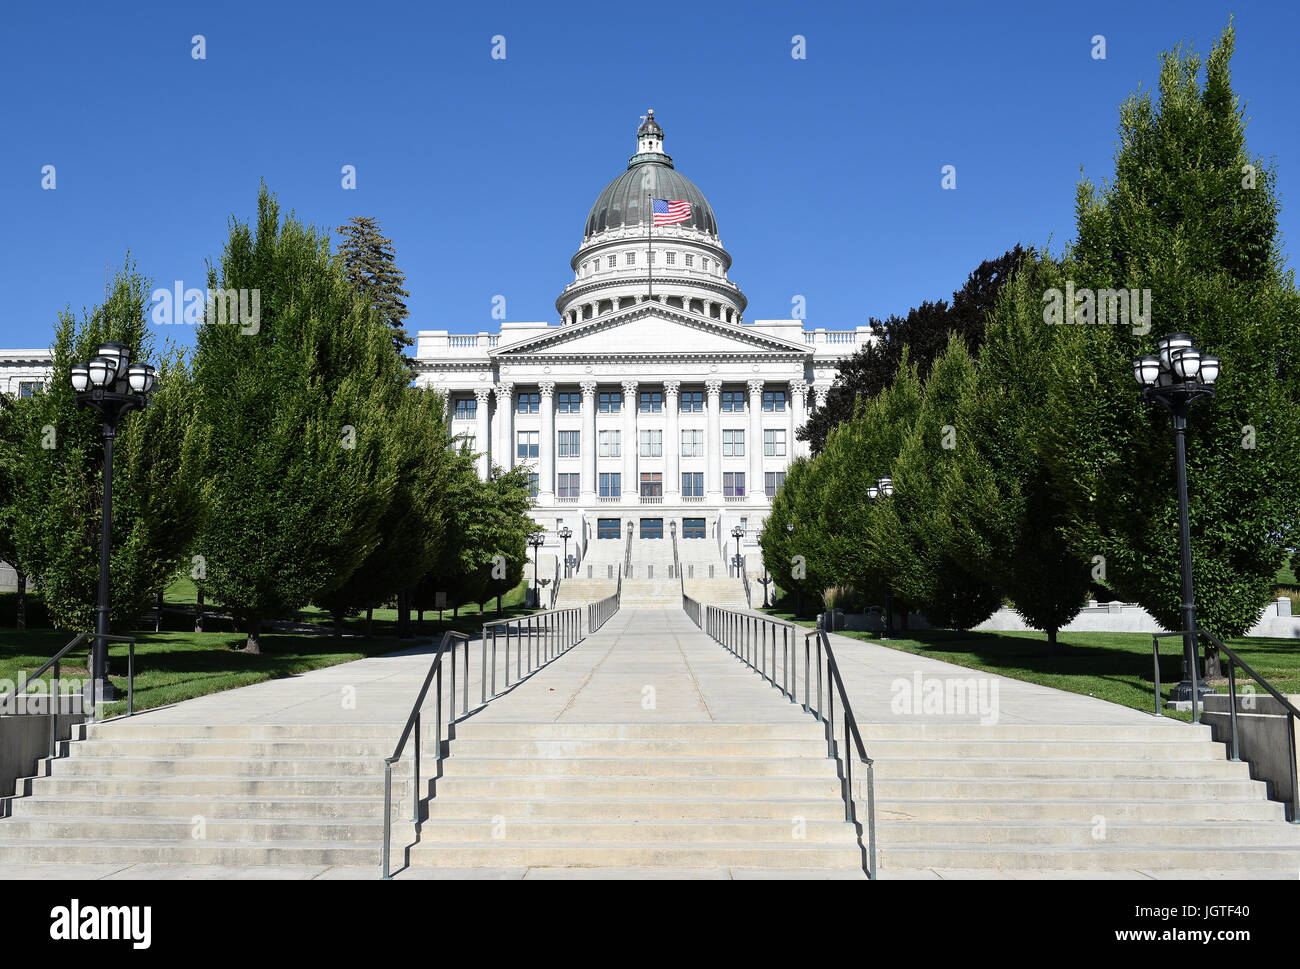 SALT LAKE CITY, Utah - Giugno 28, 2017: Utah State Capitol Building west side. Nel 1888, la città ha donato la terra, chiamato Arsenal Hill, a Utah Terr Foto Stock